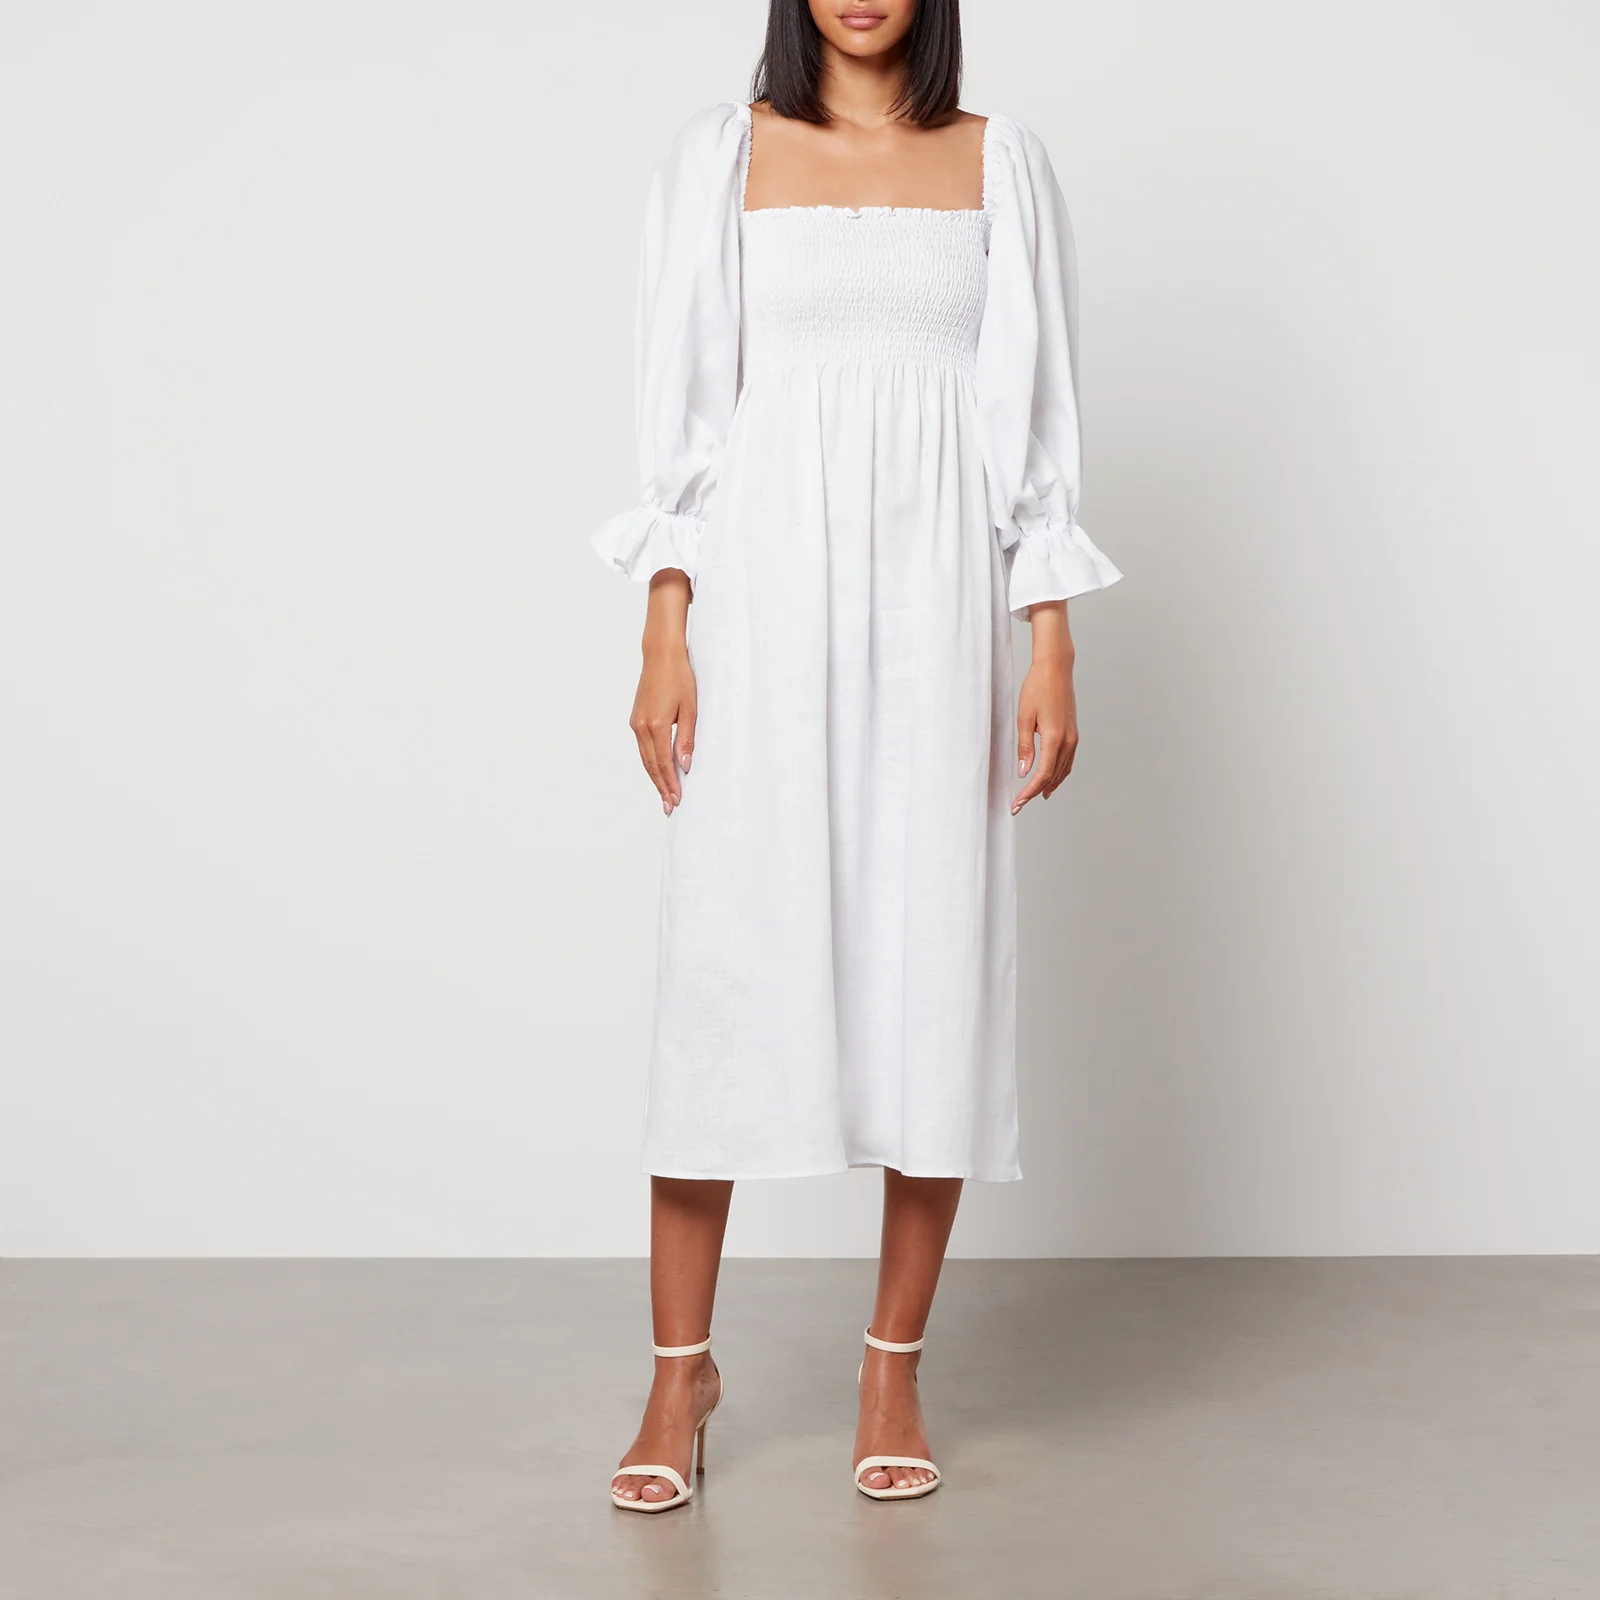 Sleeper Women's Atlanta Linen Dress - White Image 1